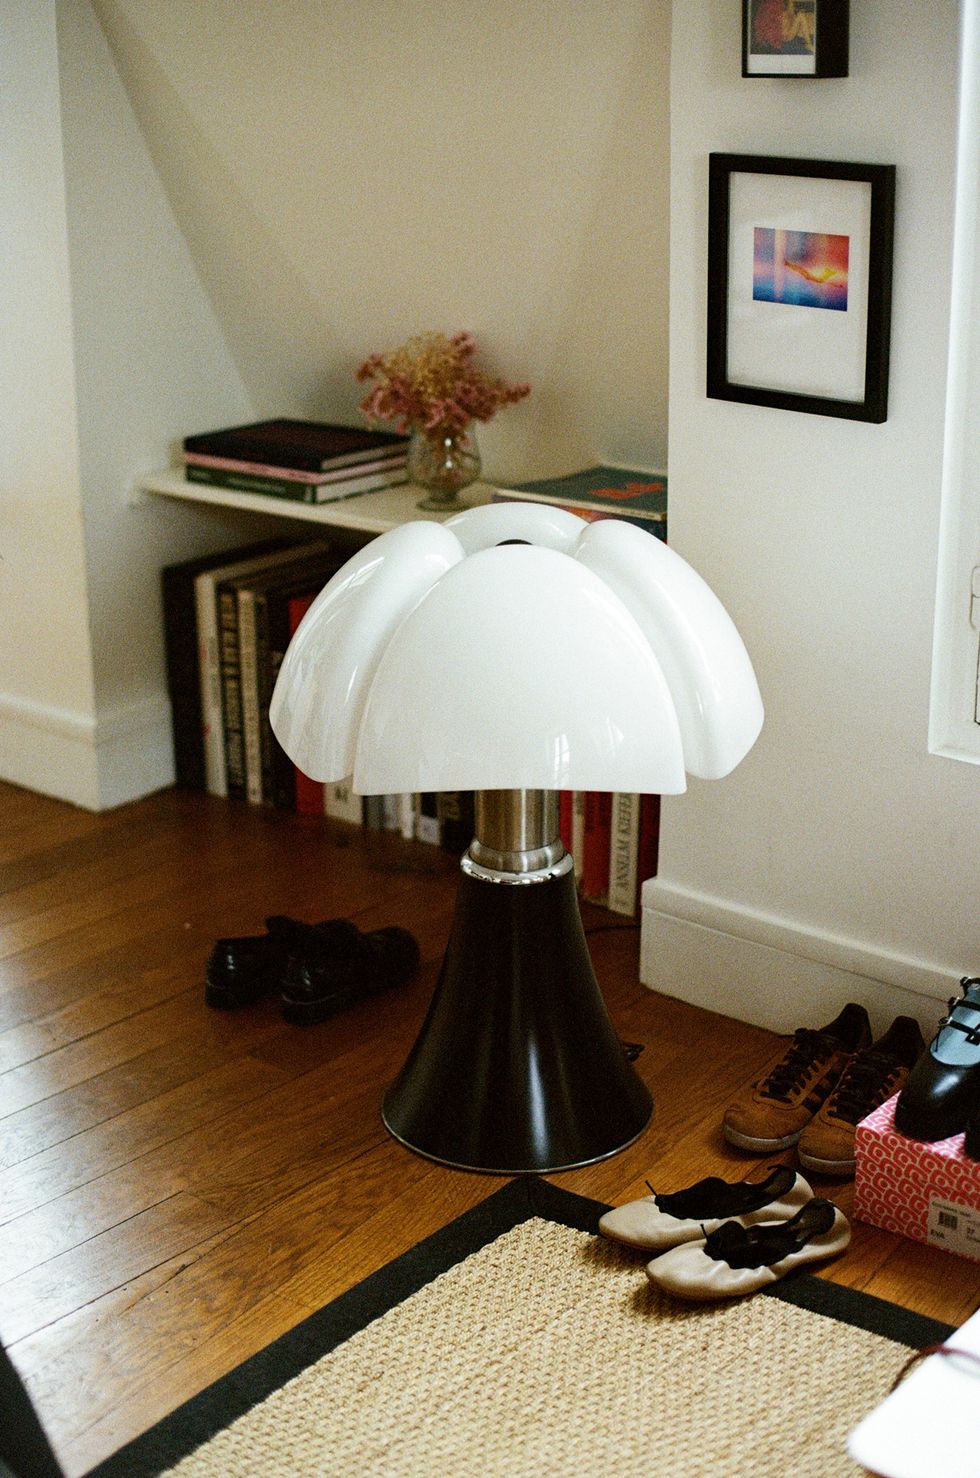 a lamp on a wood floor